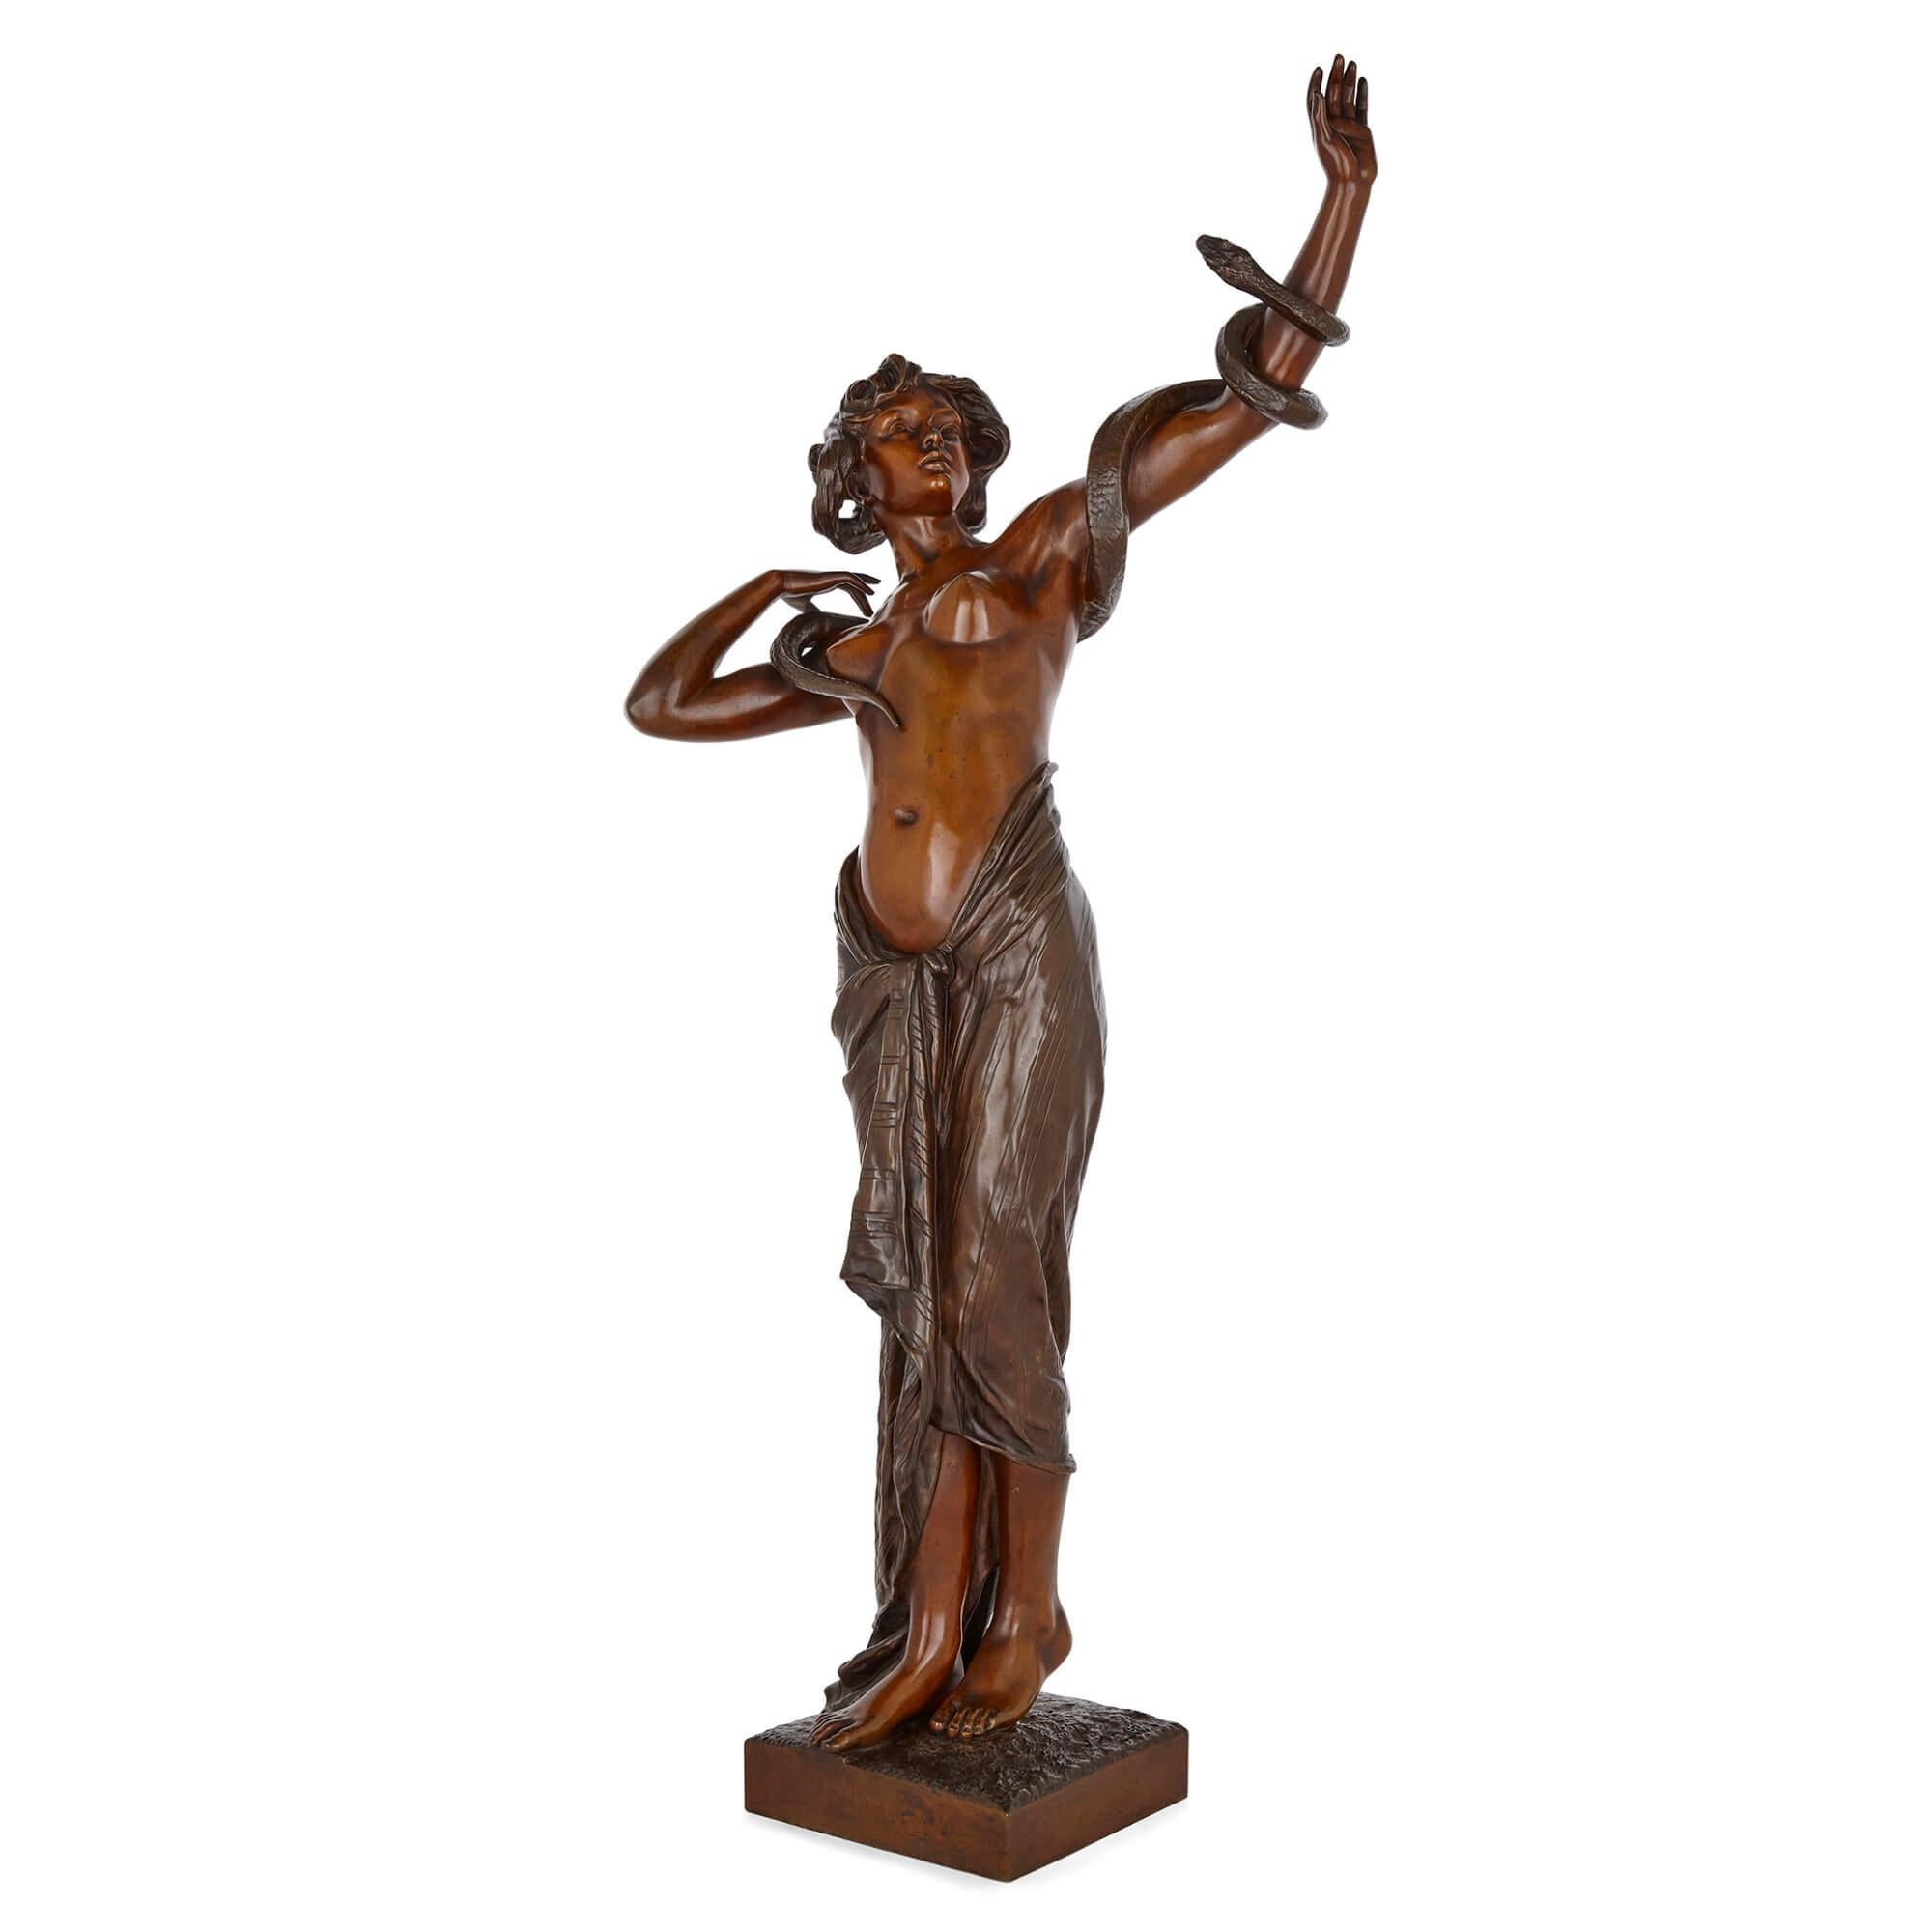 Eine große und seltene weibliche Bronzefigur von Goldscheider
Österreich, Ende 19. Jahrhundert
Maße: Höhe 85cm, Breite 38cm, 25cm

Diese großformatige und umso seltenere, weil in Bronze gegossene Frauenfigur ist ein Werk des österreichischen